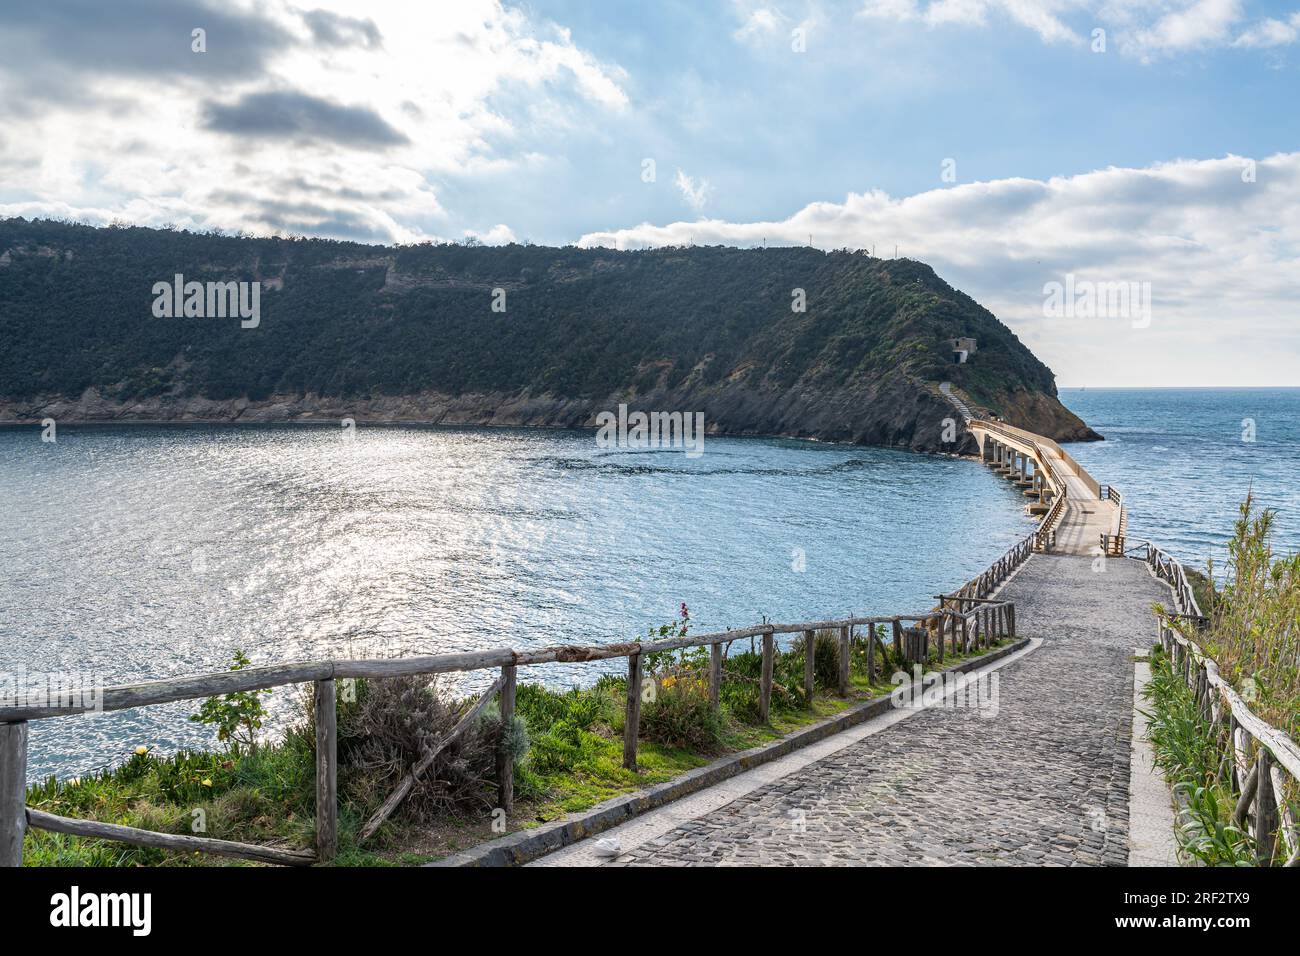 Paysage pittoresque de Procida avec le pont reliant l'île de Vivara, Campanie, Italie Banque D'Images